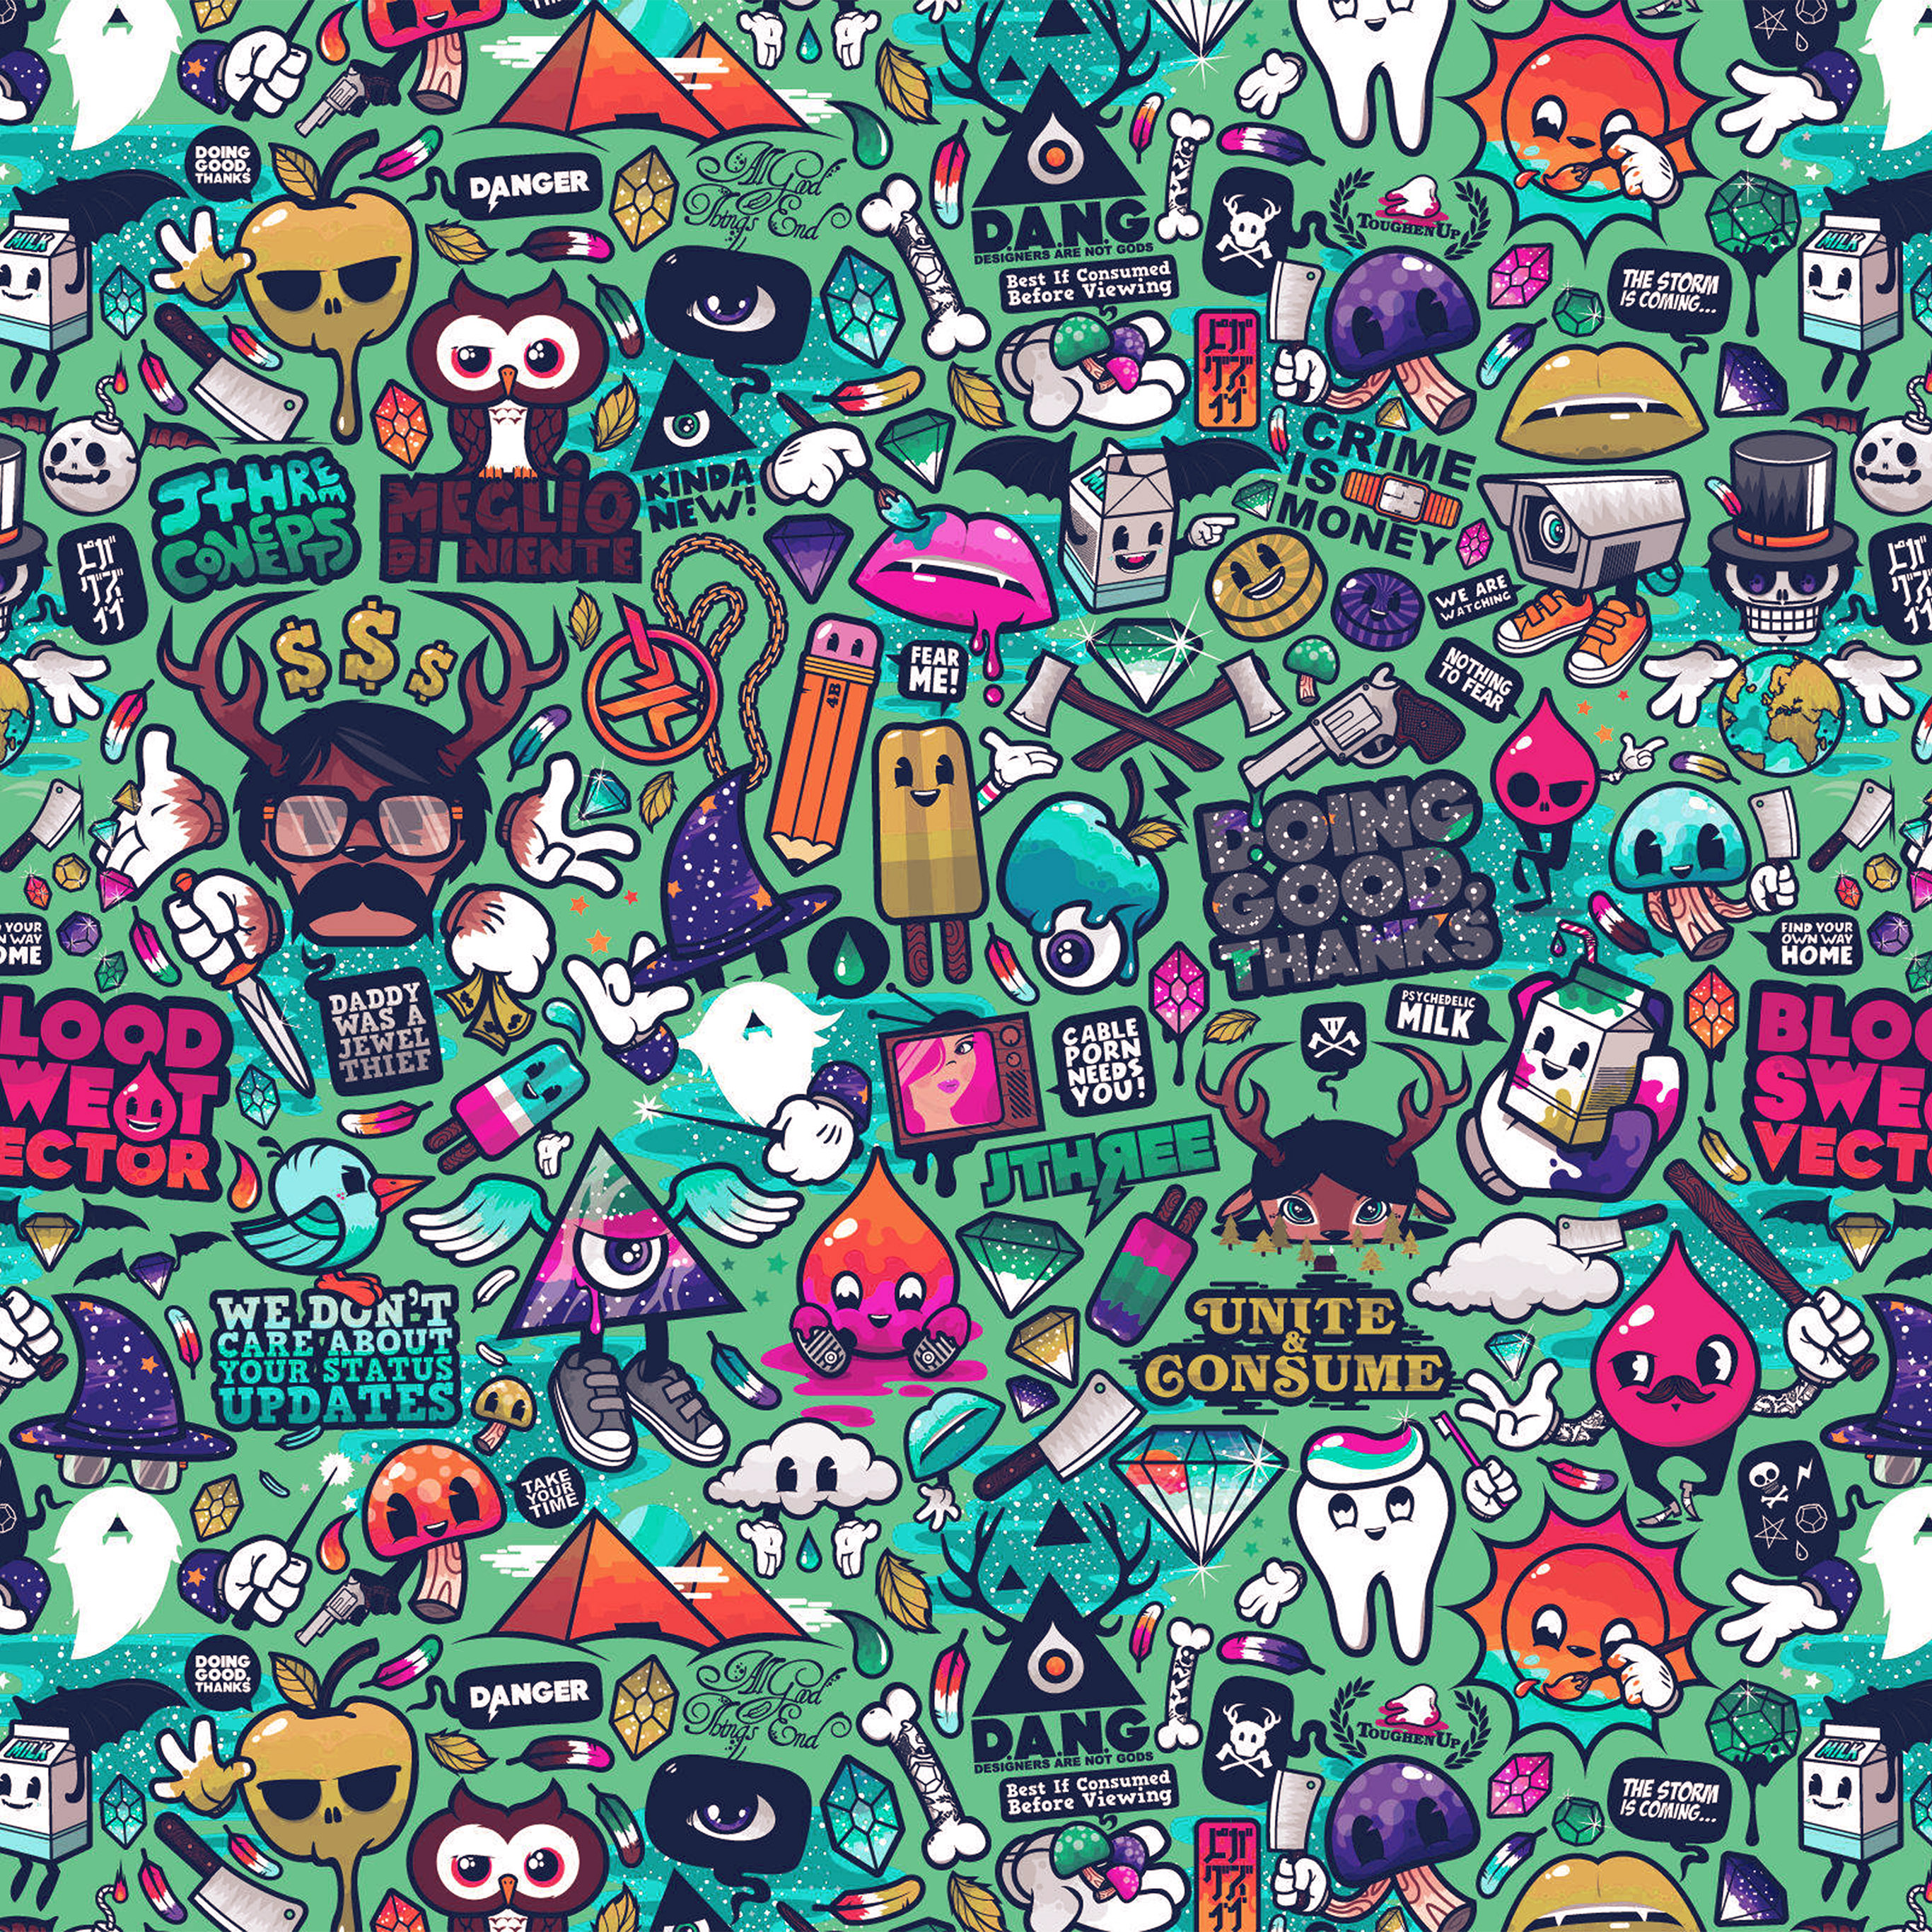 graffiti wallpaper for android,pattern,cartoon,art,design,illustration